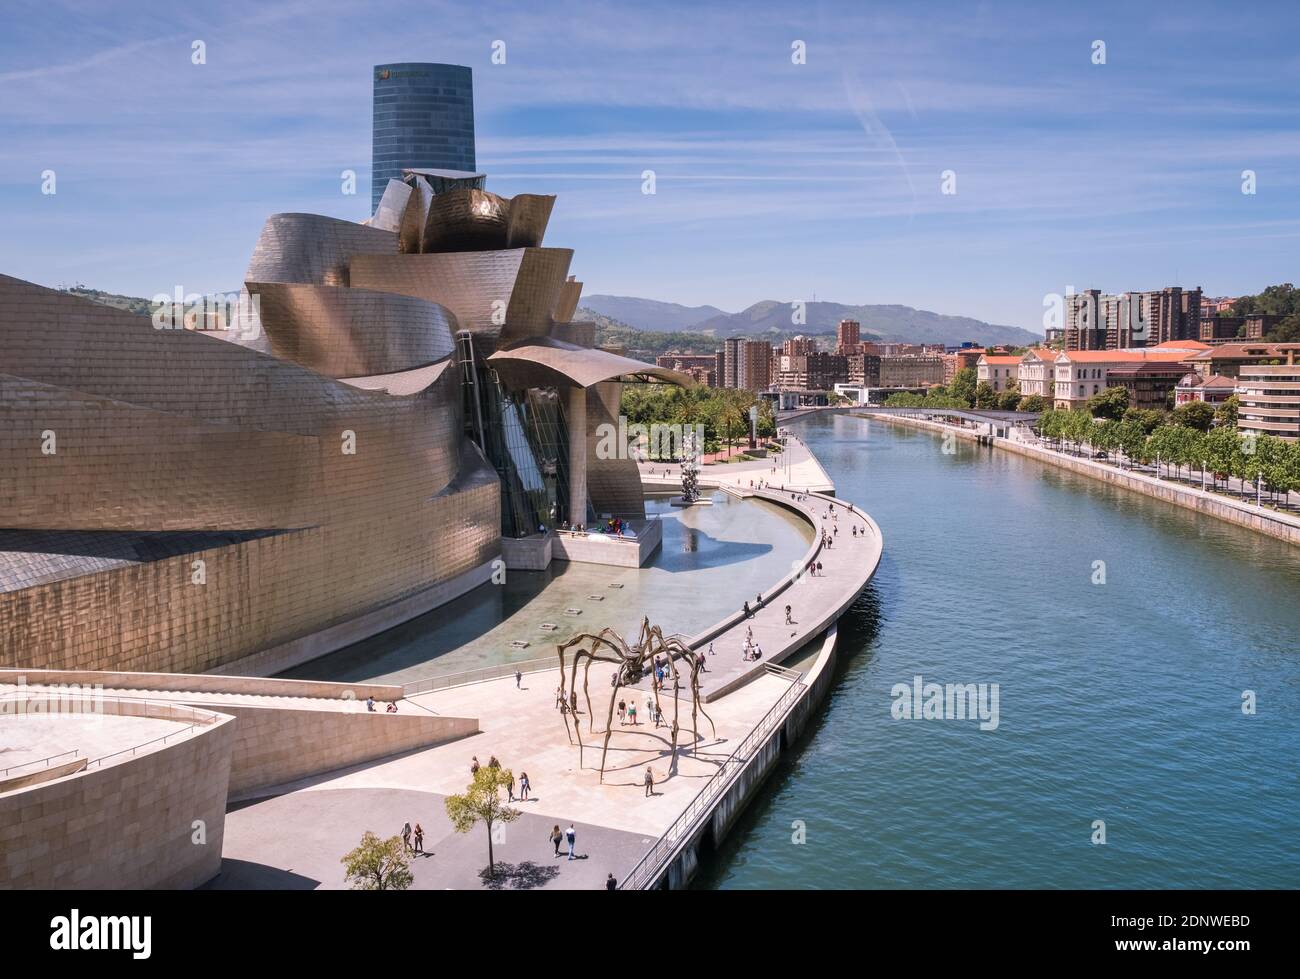 Bilbao, pays Basque, Espagne : vue sur le musée Guggenheim le long de l'estuaire de Nervión Banque D'Images